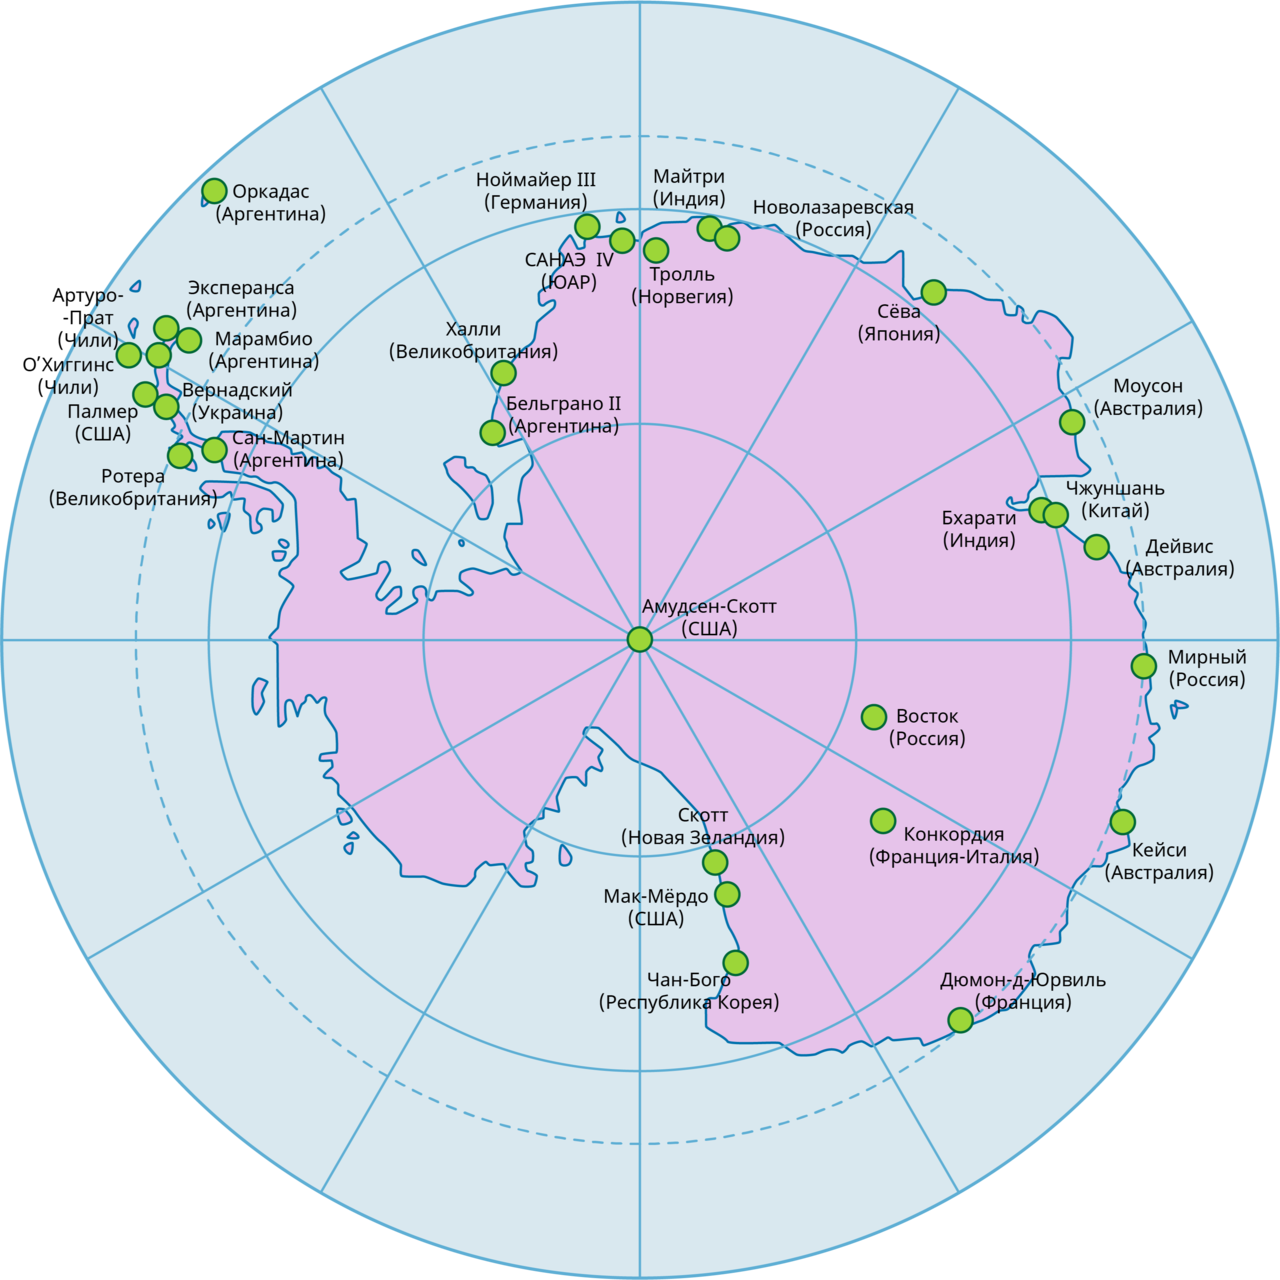 Название антарктических станций. Научные станции в Антарктиде на карте. Полярные станции в Антарктиде на карте. Полярные станции России на карте Антарктики. Научная станция Мирный в Антарктиде на карте.